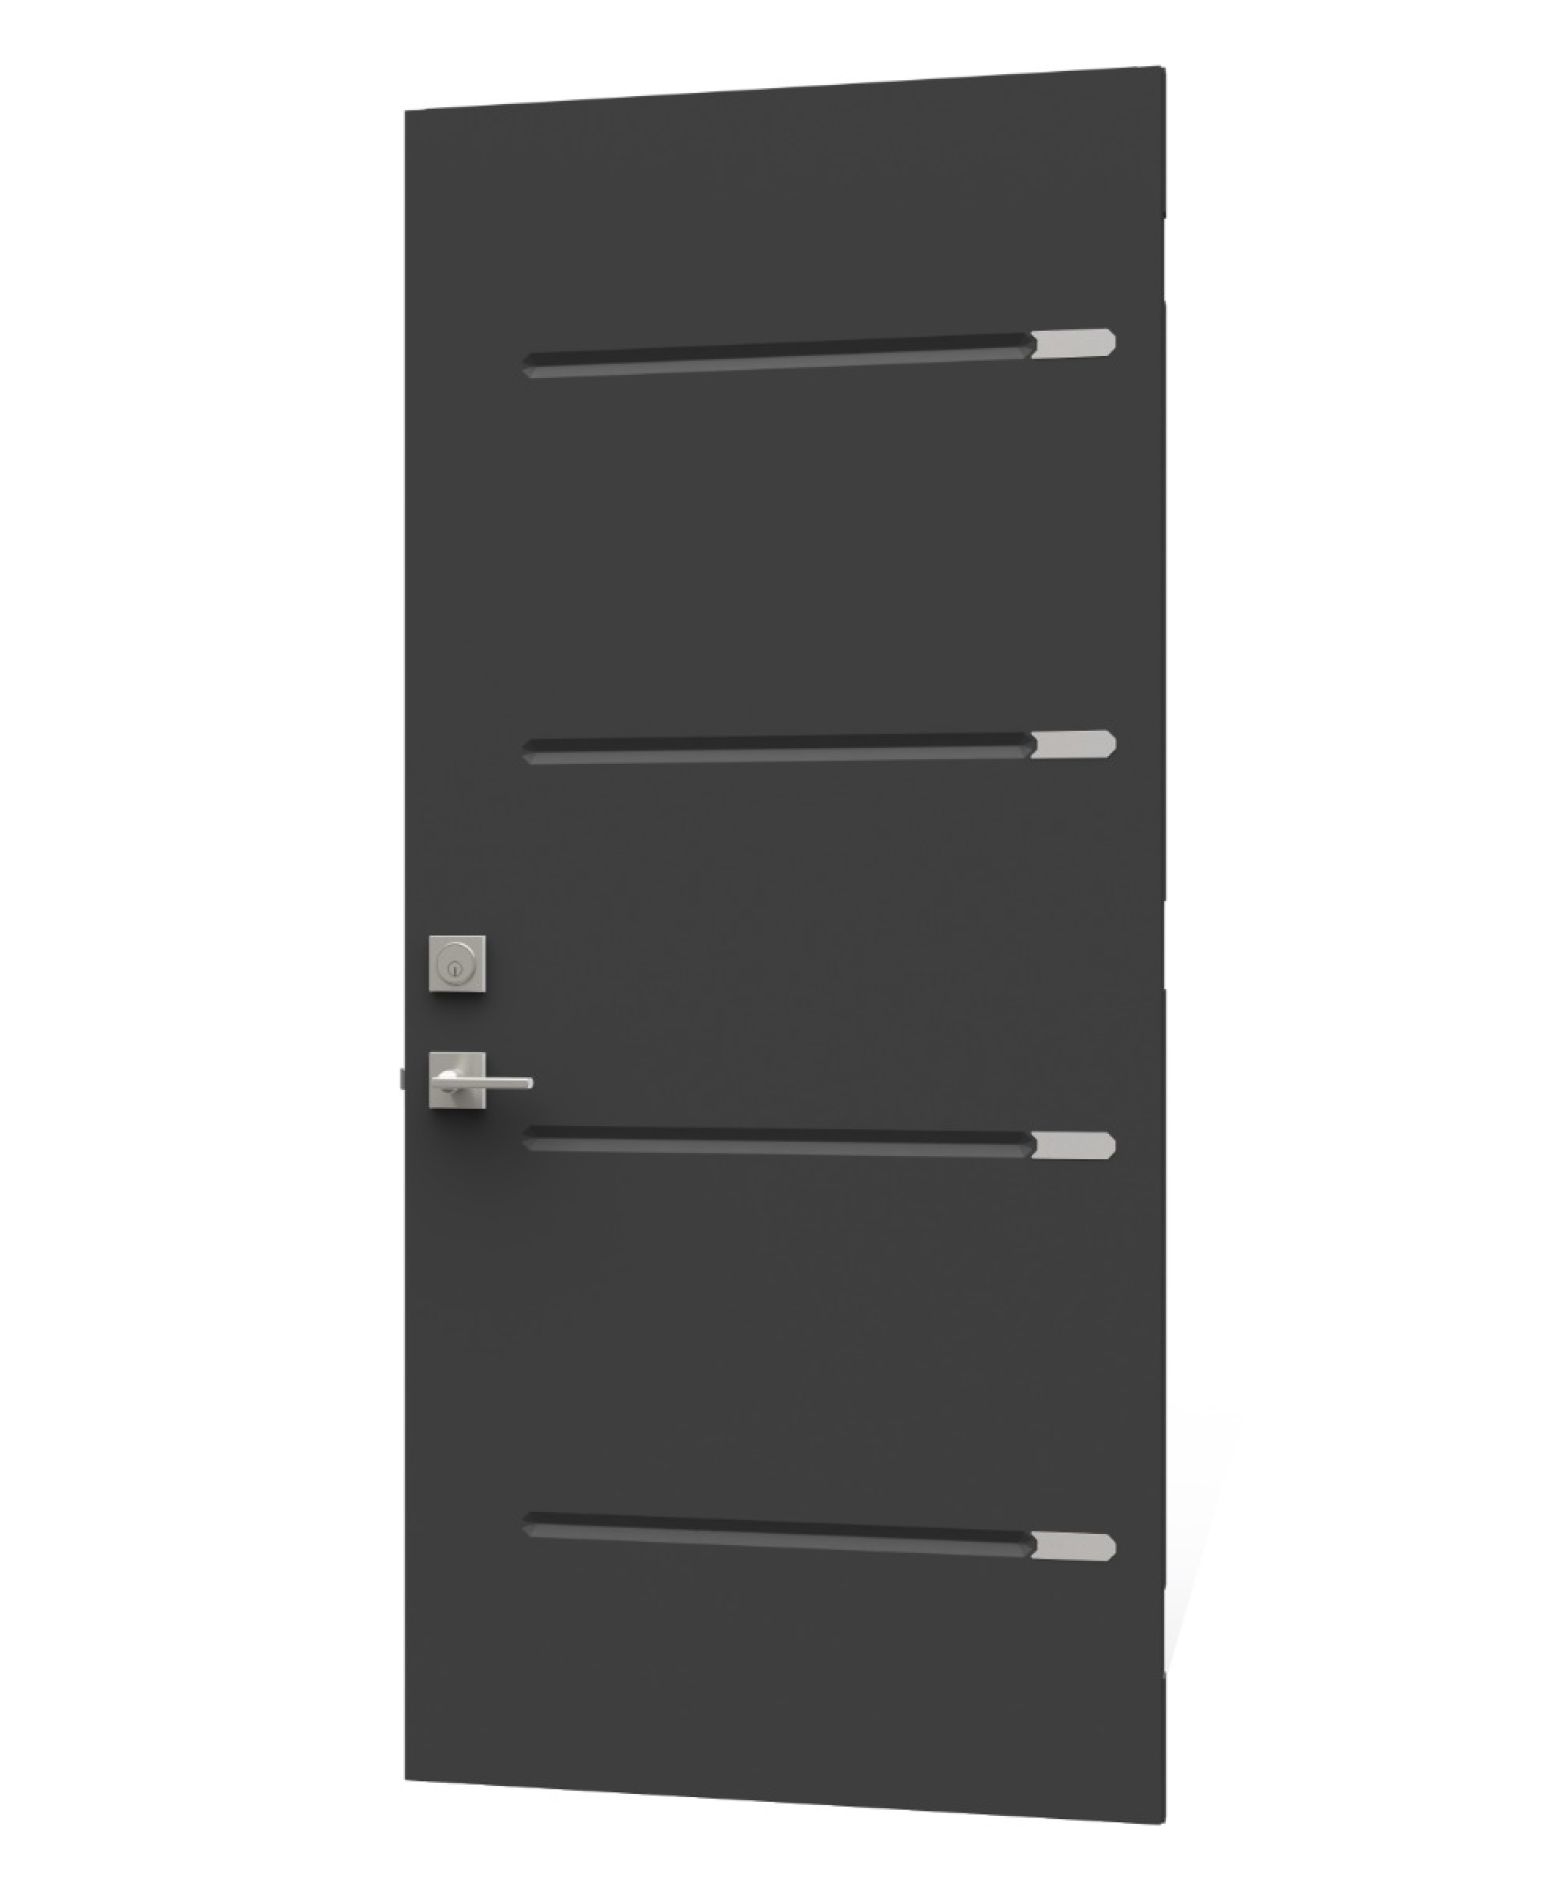 Doors for contractor - NHP